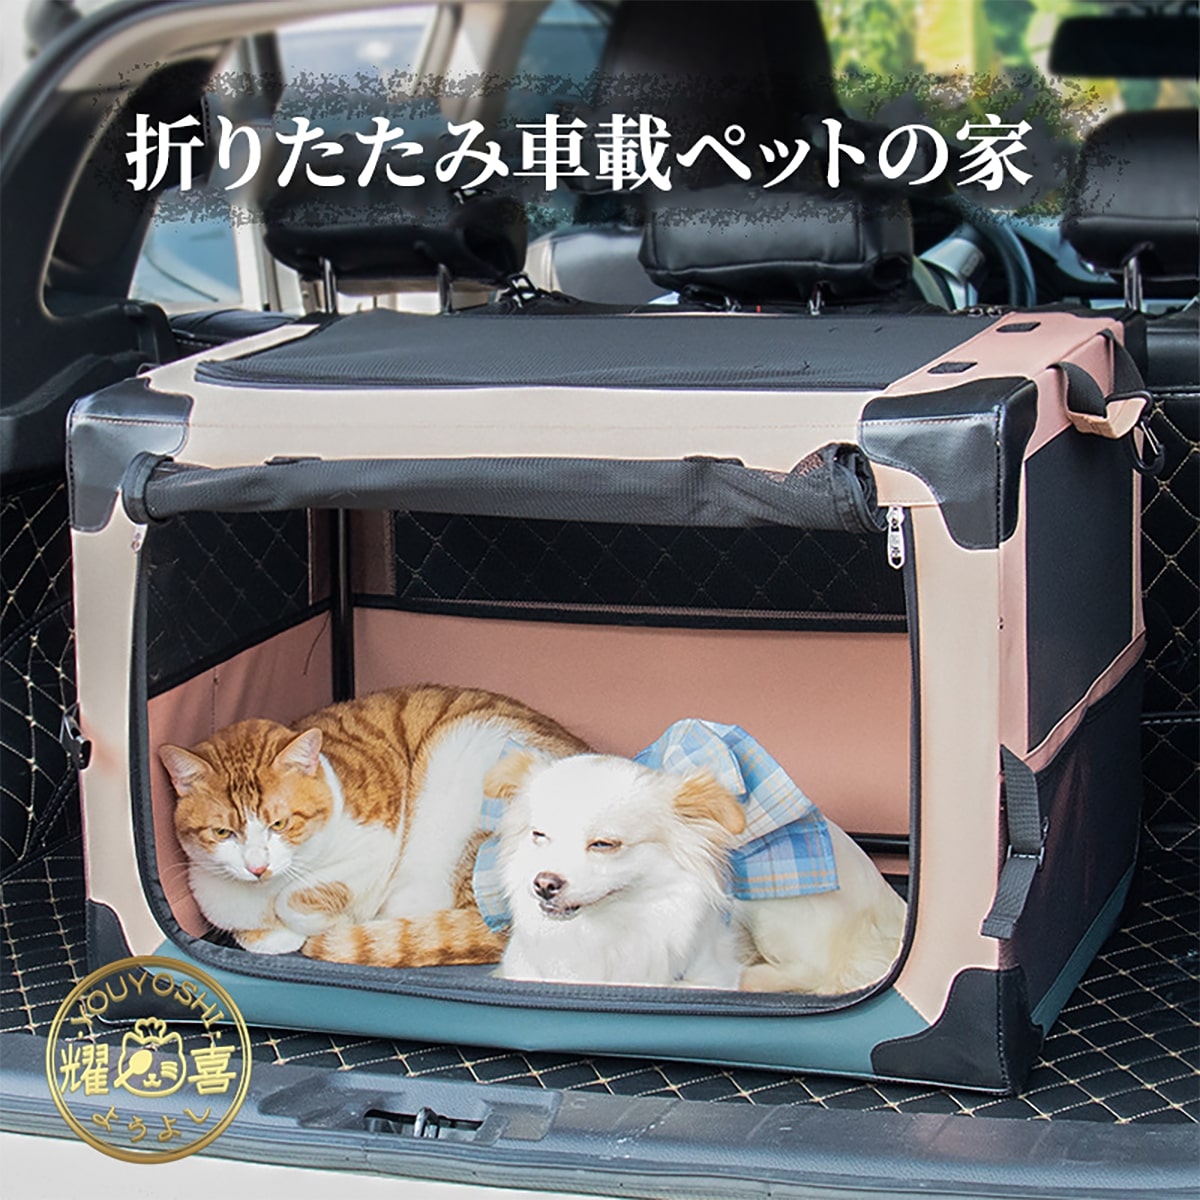 犬のサークル 猫ケージ ネコ ゲージ 大型折りたたみ 犬ケージ ペット